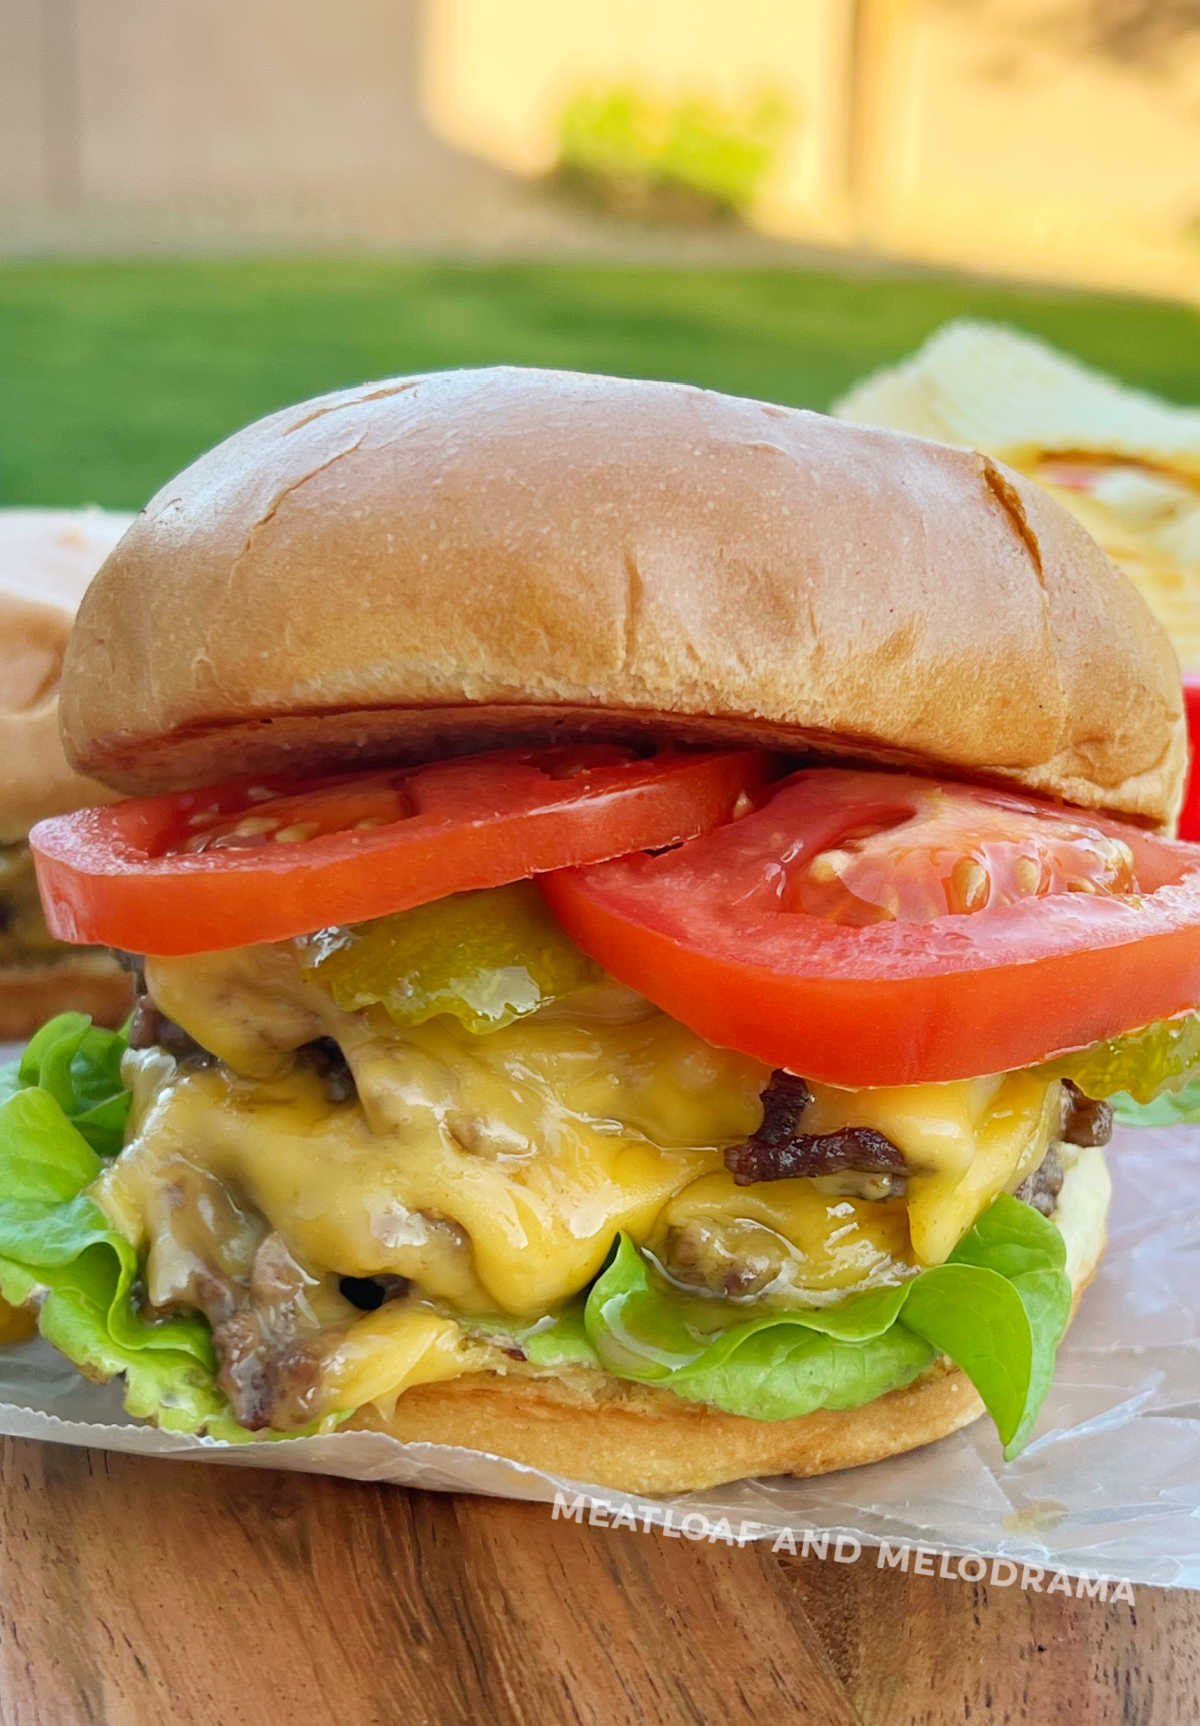 Homemade Smash Burgers Recipe